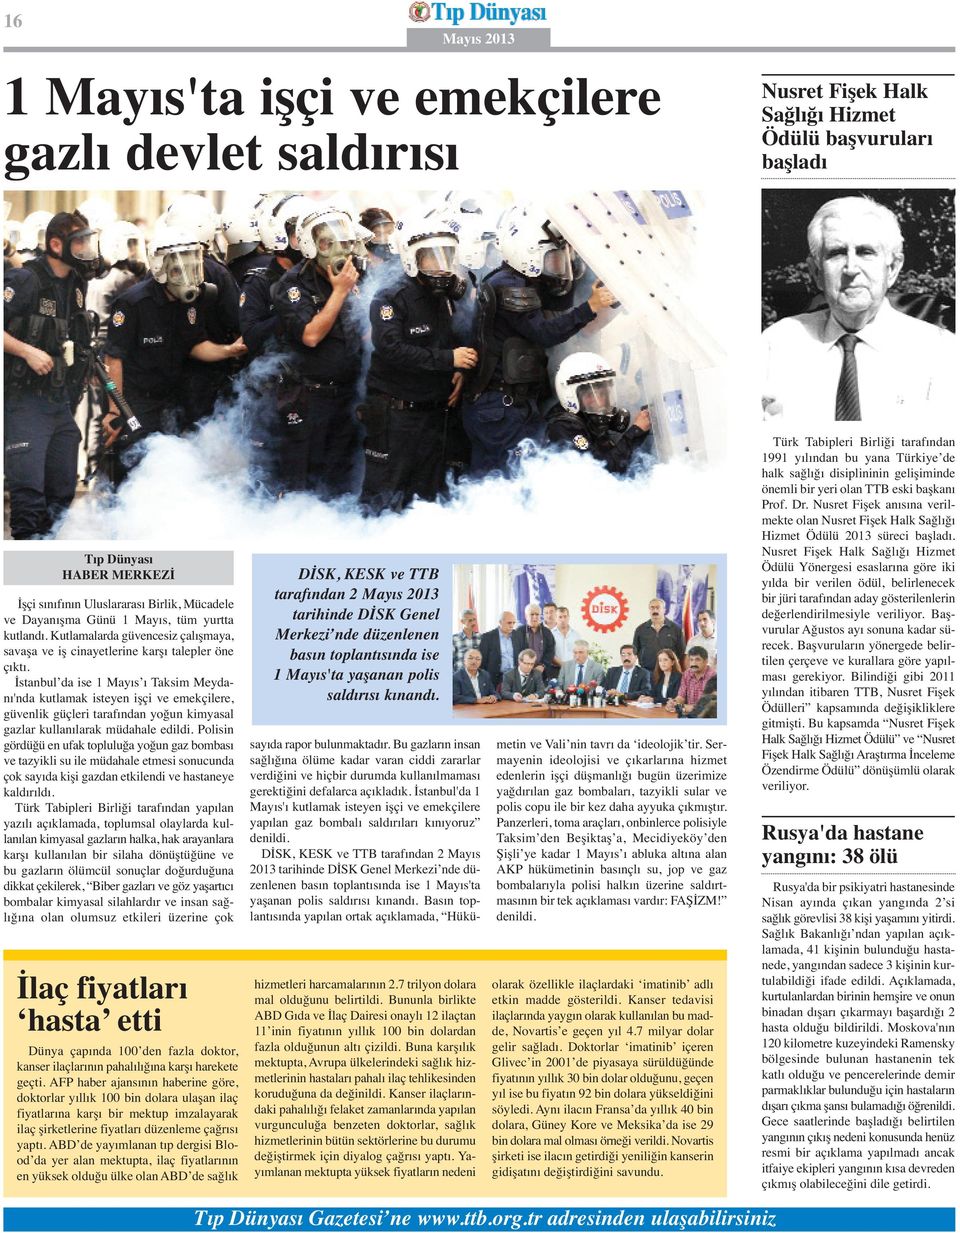 İstanbul da ise 1 Mayıs ı Taksim Meydanı'nda kutlamak isteyen işçi ve emekçilere, güvenlik güçleri tarafından yoğun kimyasal gazlar kullanılarak müdahale edildi.